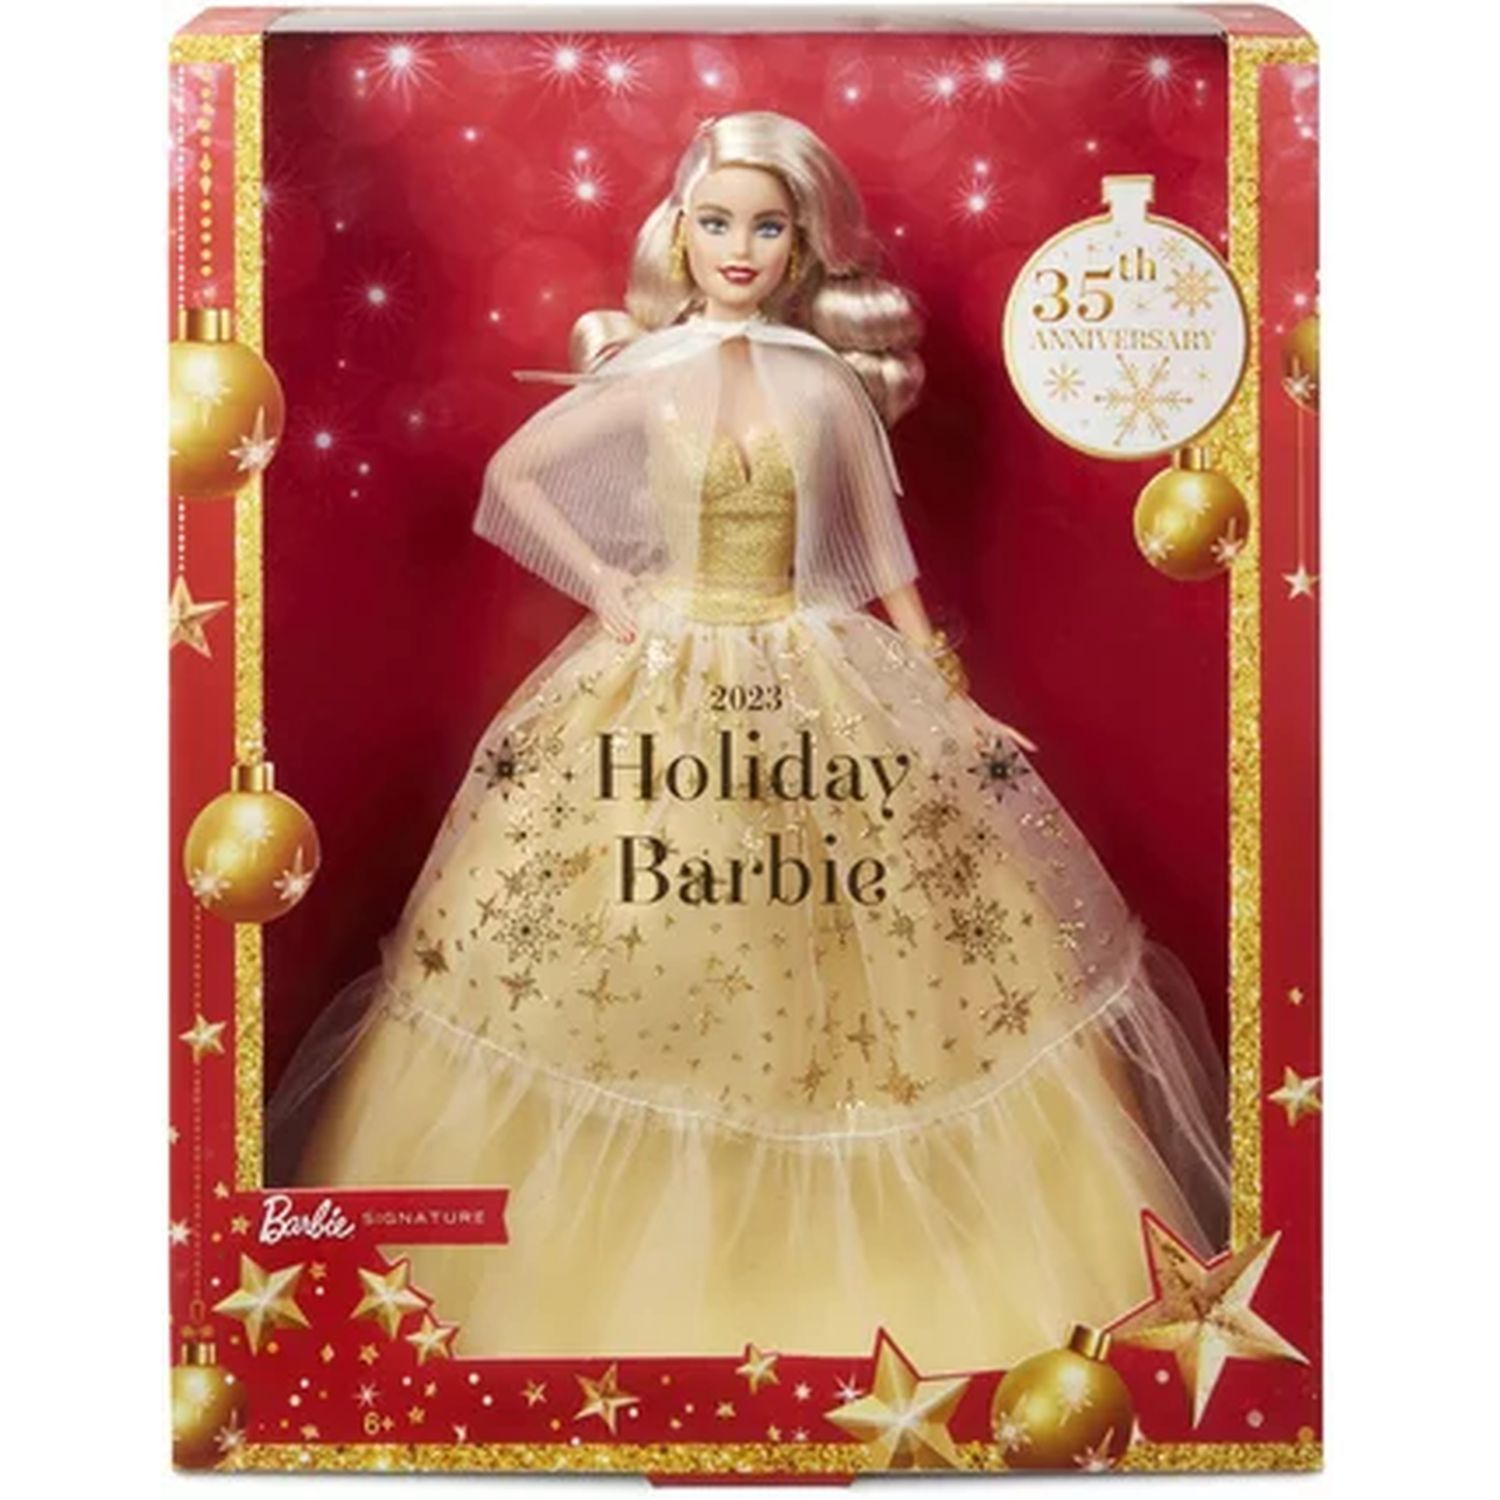 Mattel Barbie tresses magiques - En promotion chez Auchan Ronq